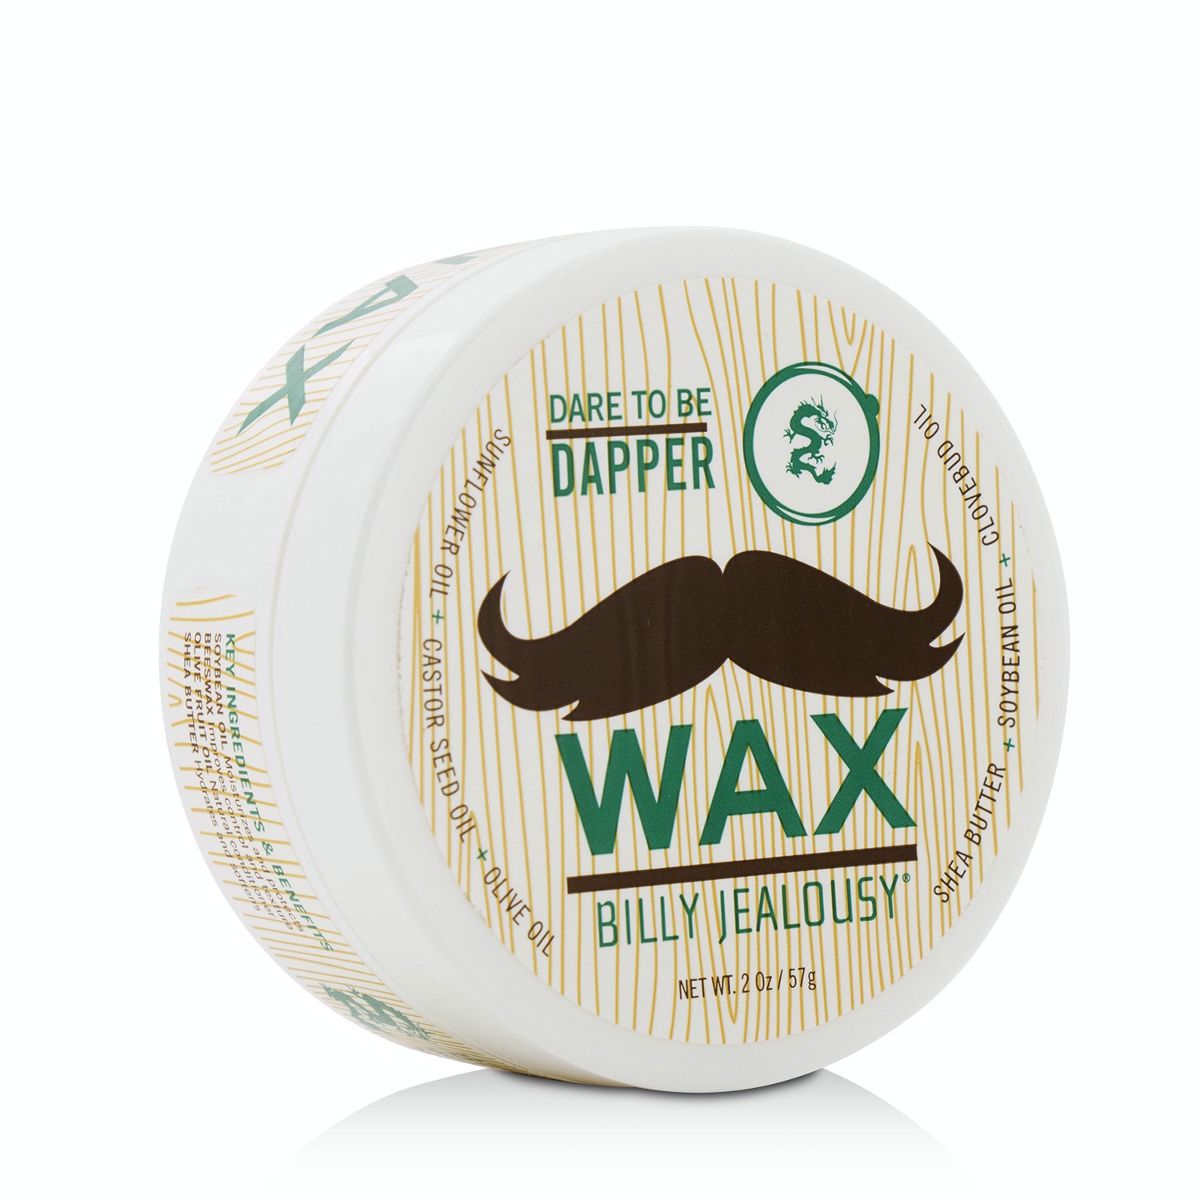 Bulletproof Mustache Fiber Wax Billy Jealousy Image